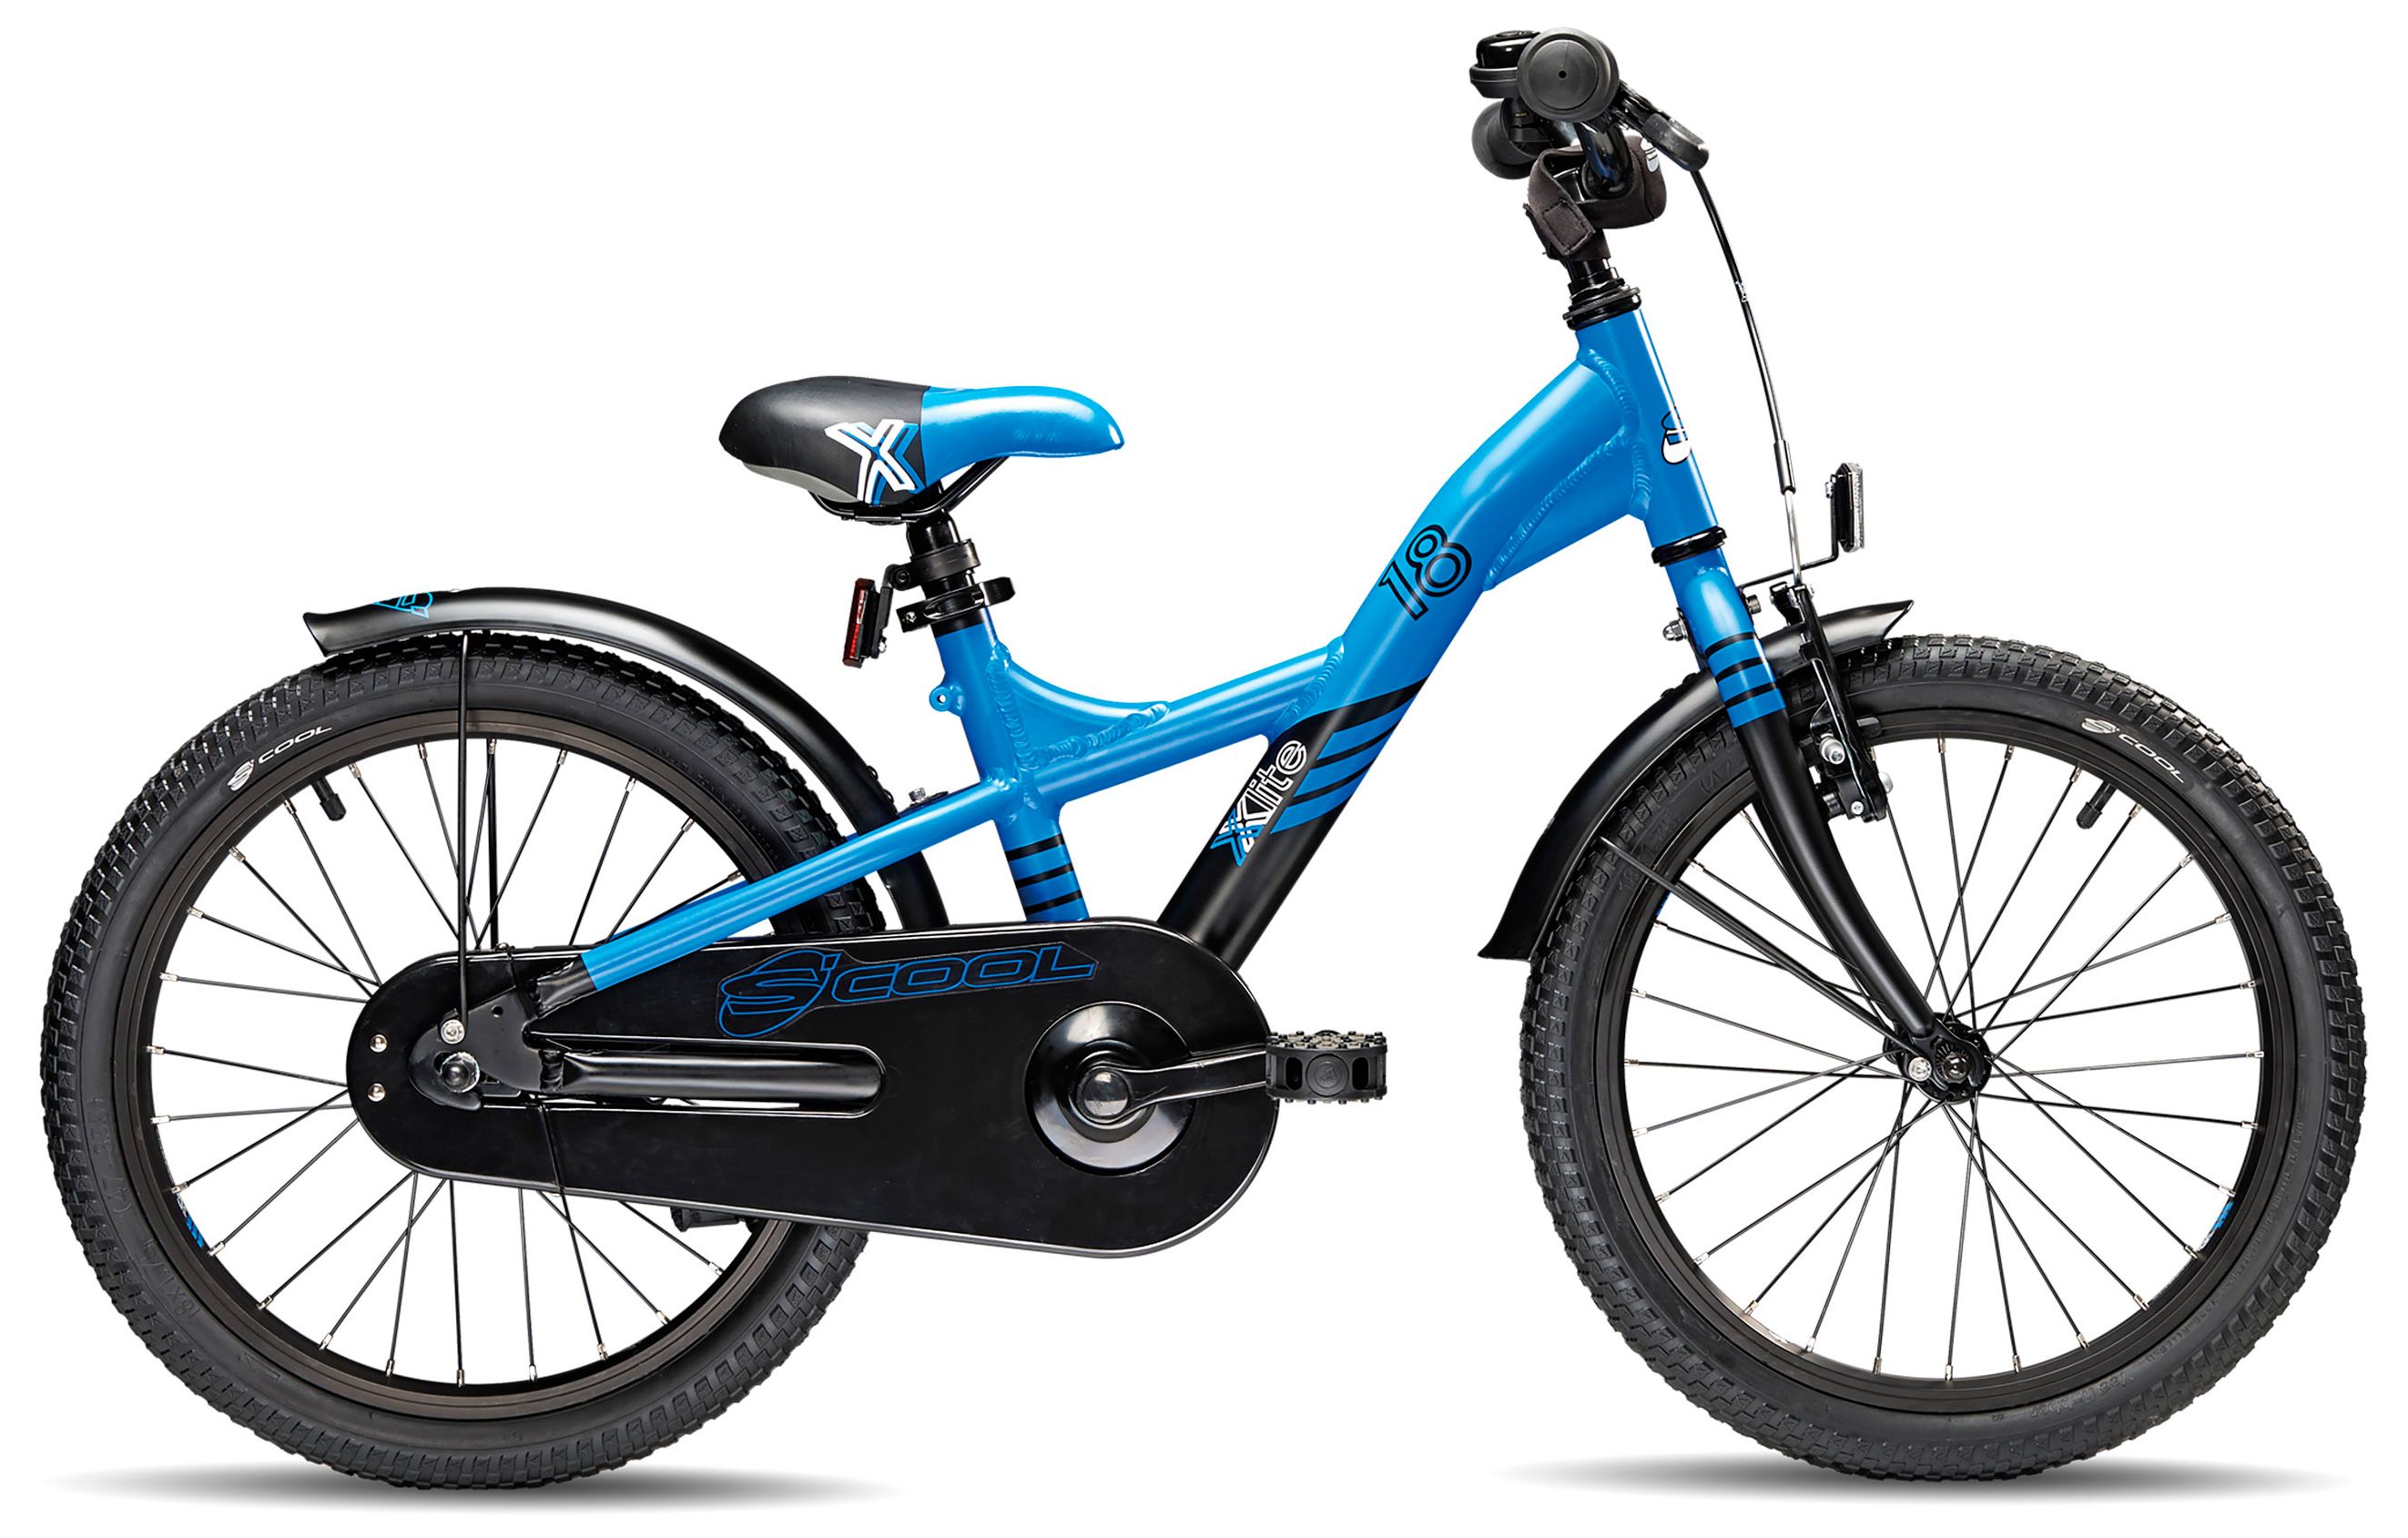  Отзывы о Детском велосипеде Scool XXlite pro 20-3 2015